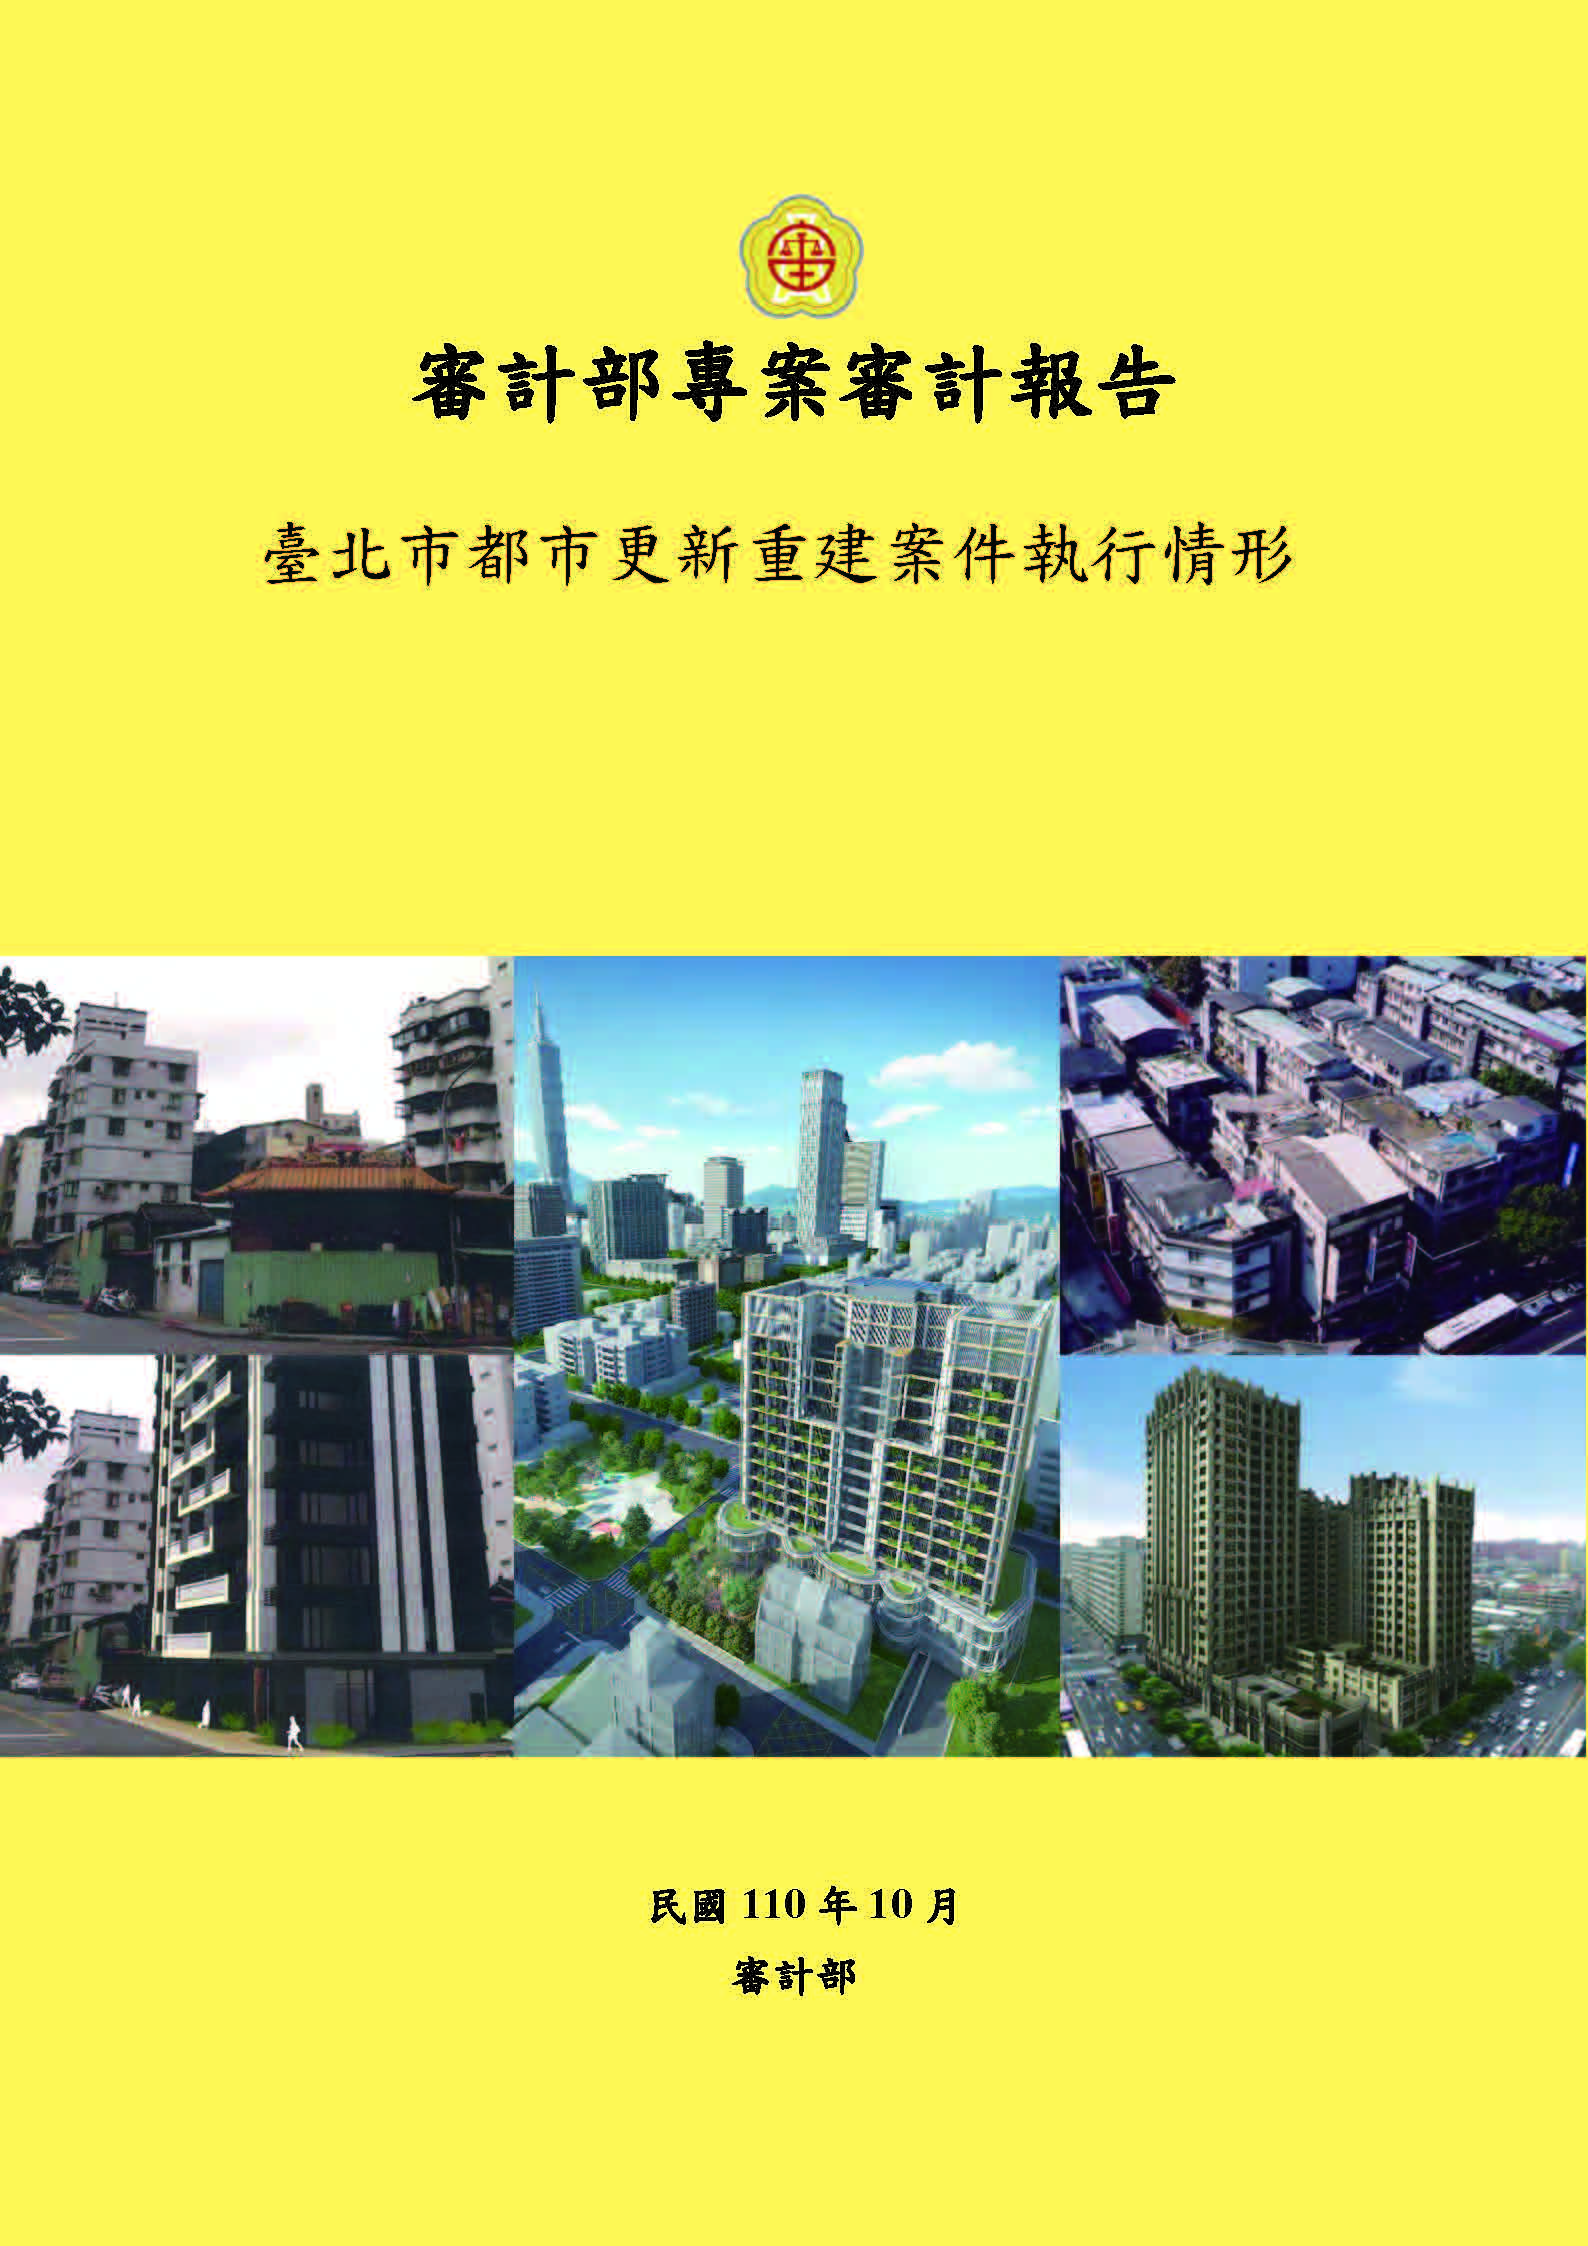 臺北市都市更新重建案件執行情形